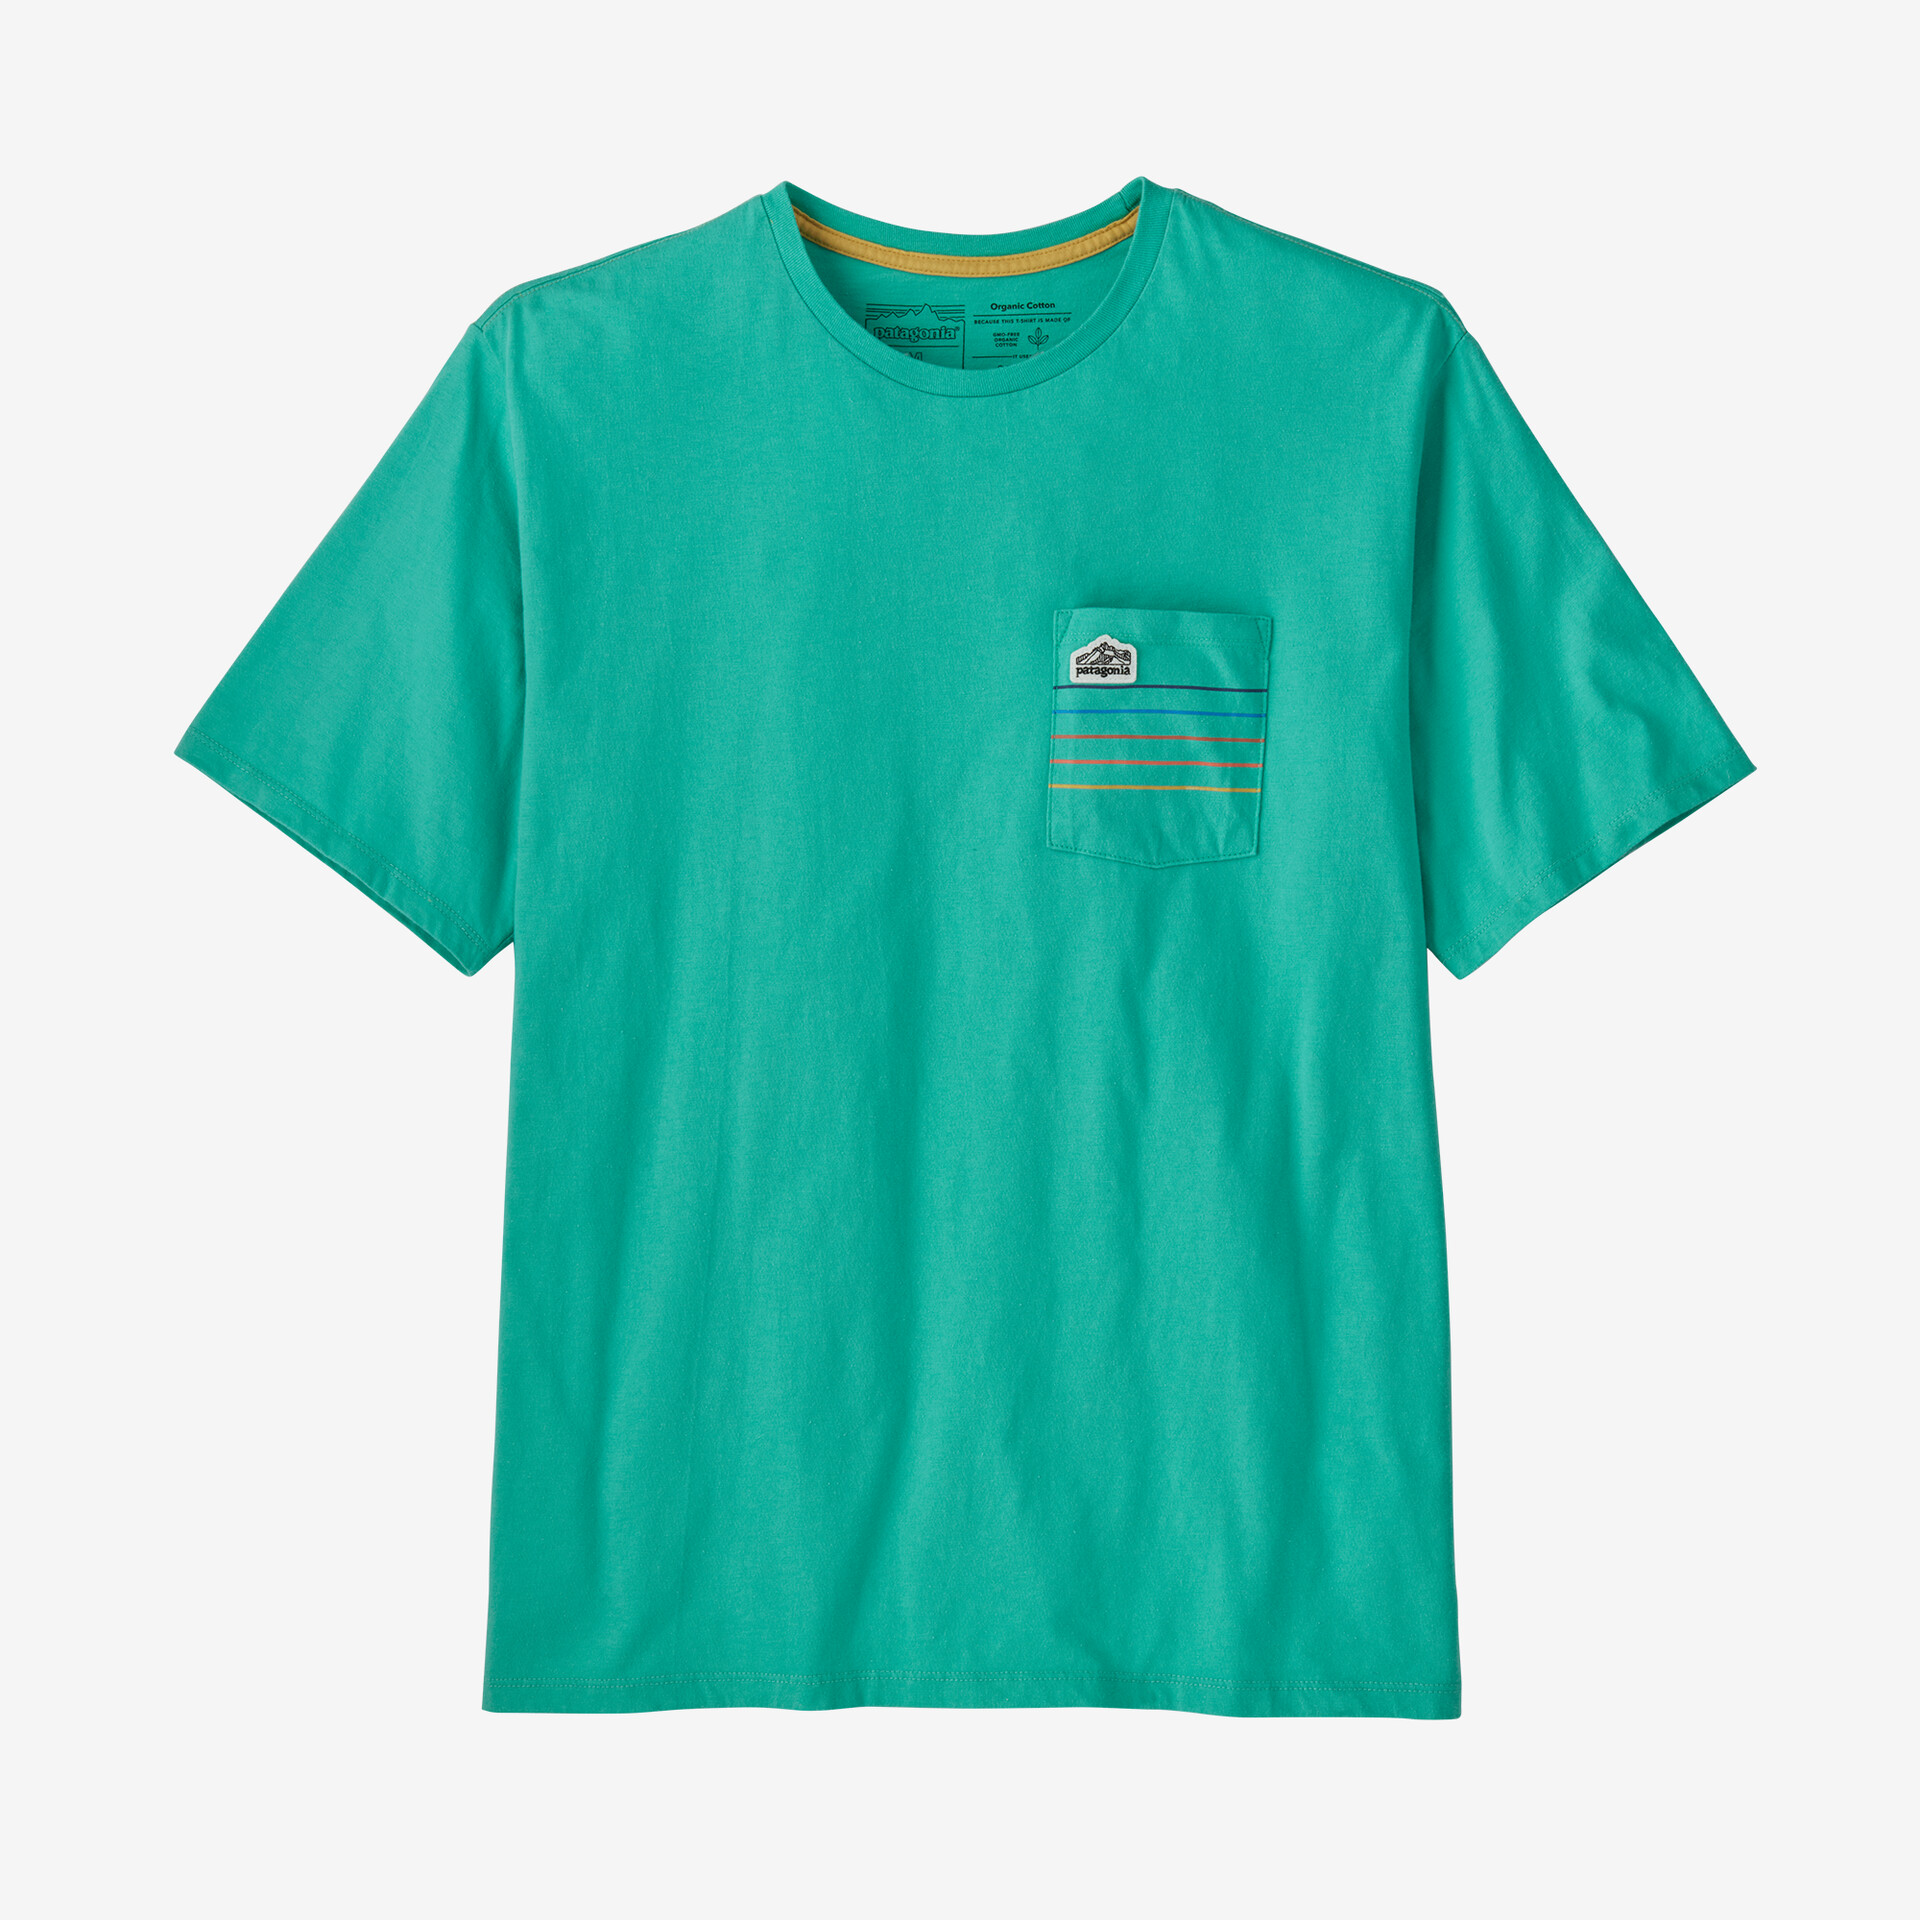 Мужская футболка с карманами и логотипом Ridge Stripe Patagonia, цвет Fresh Teal цена и фото